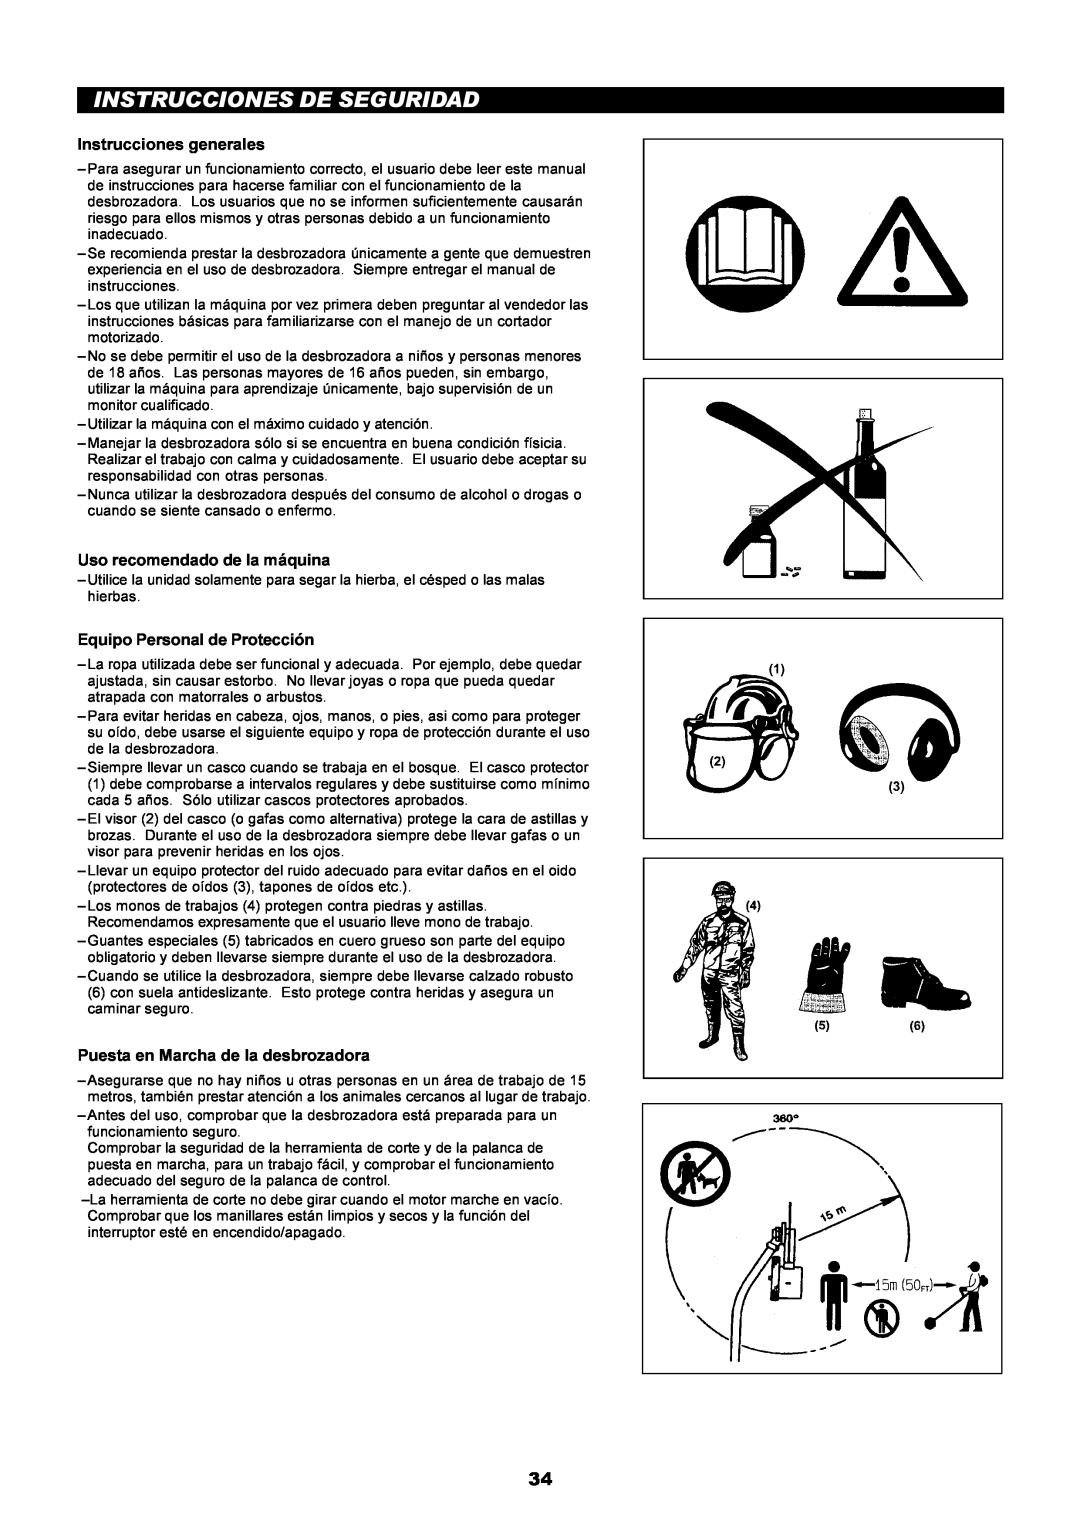 Dolmar PE-251 instruction manual Instrucciones De Seguridad, Instrucciones generales, Uso recomendado de la máquina 